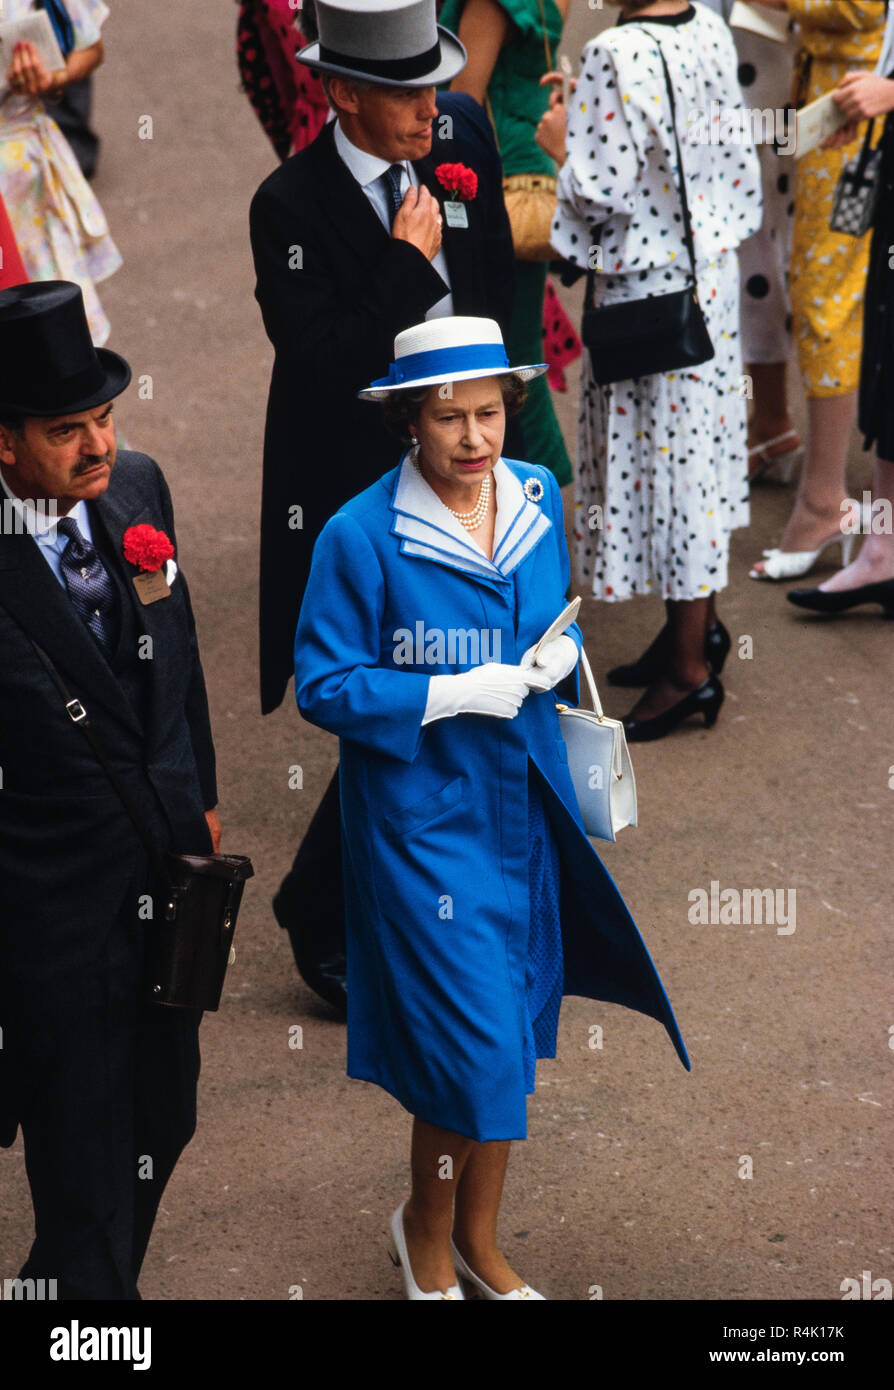 Ascot Rennen England Großbritannien 1986 gescannt in 2018 der britischen königlichen Familie kommen und gehen etwa im Royal Ascot in 1986. Königin Elizabth II mit Prinz Philip. Mitglieder der öffentlichkeit in feine Hüte und Mützen und Schwänze für die Männer im Royal Ascot gekleidet. Stockfoto